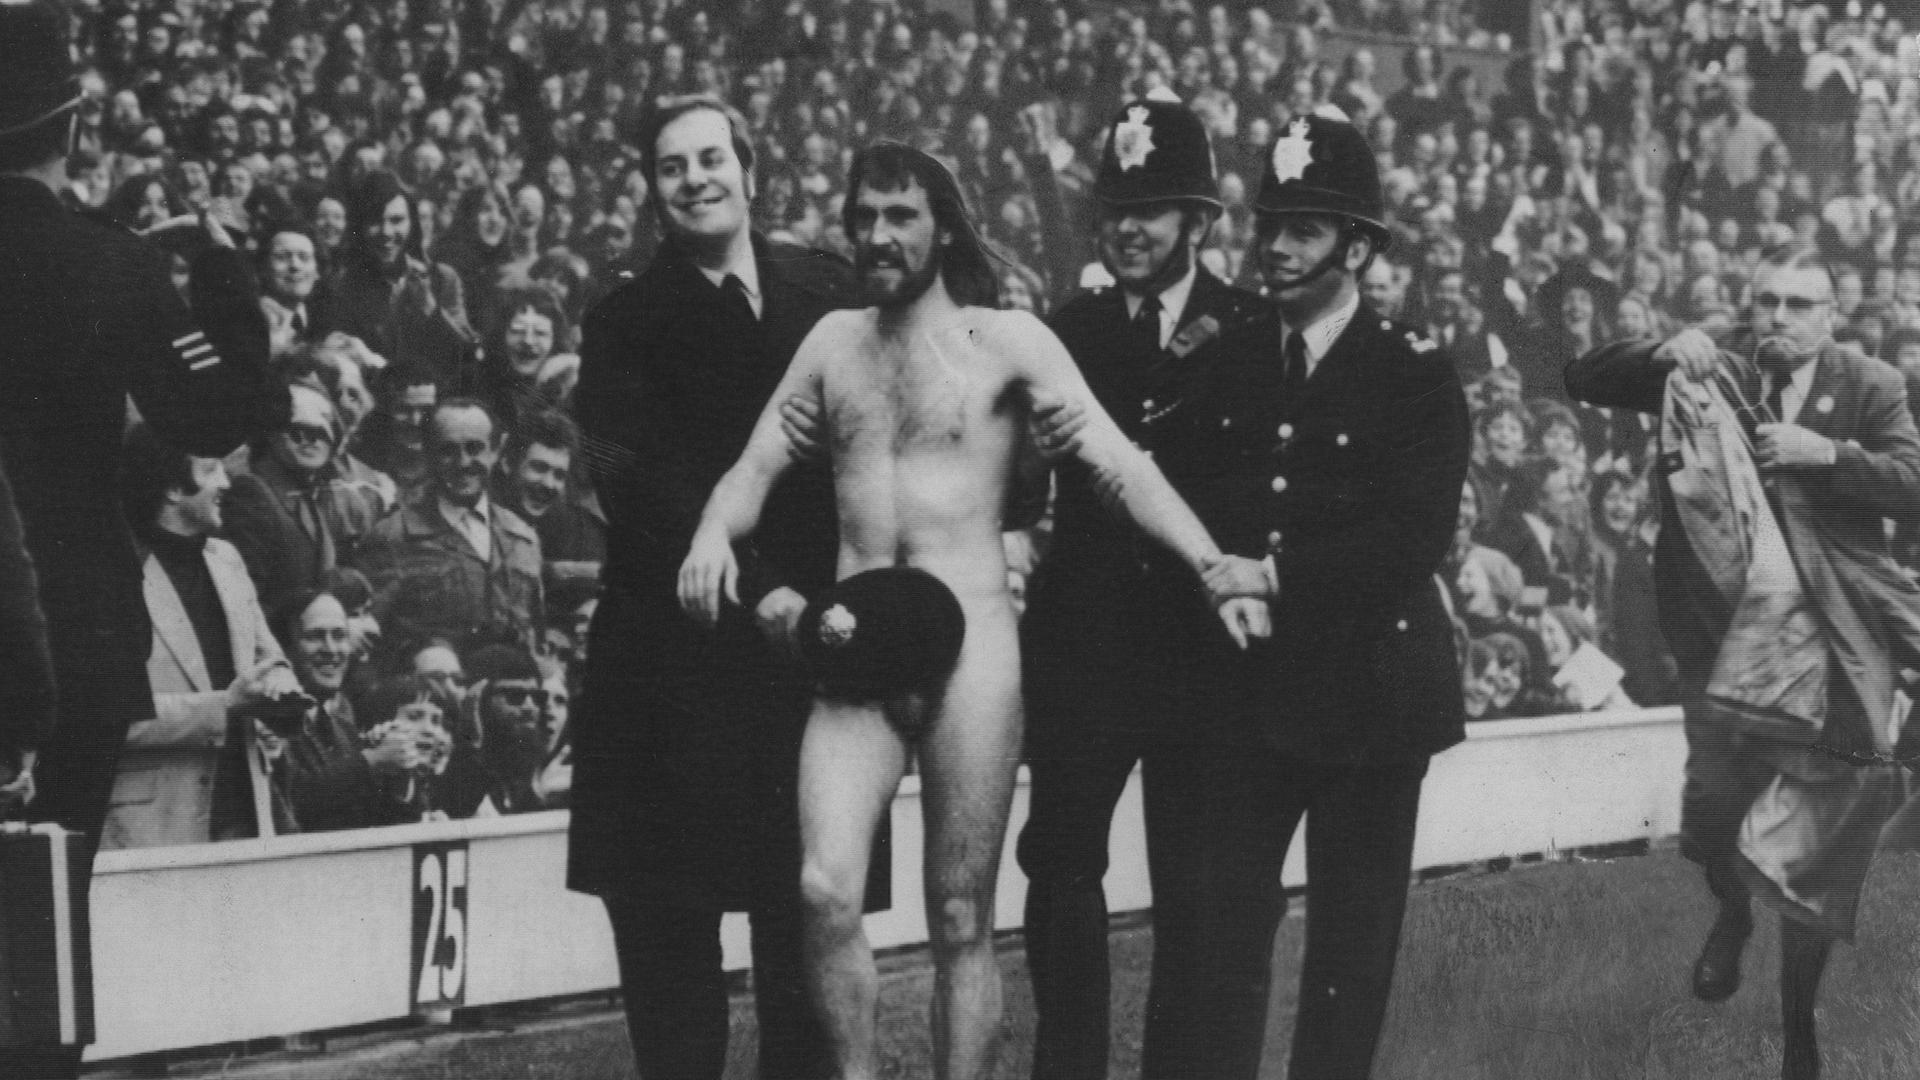 Der Flitzer Michael O´Brien, eskortiert von Polizisten, wird am 1. April 1974 in London im Stadion Twickenham vom Platz geführt.
